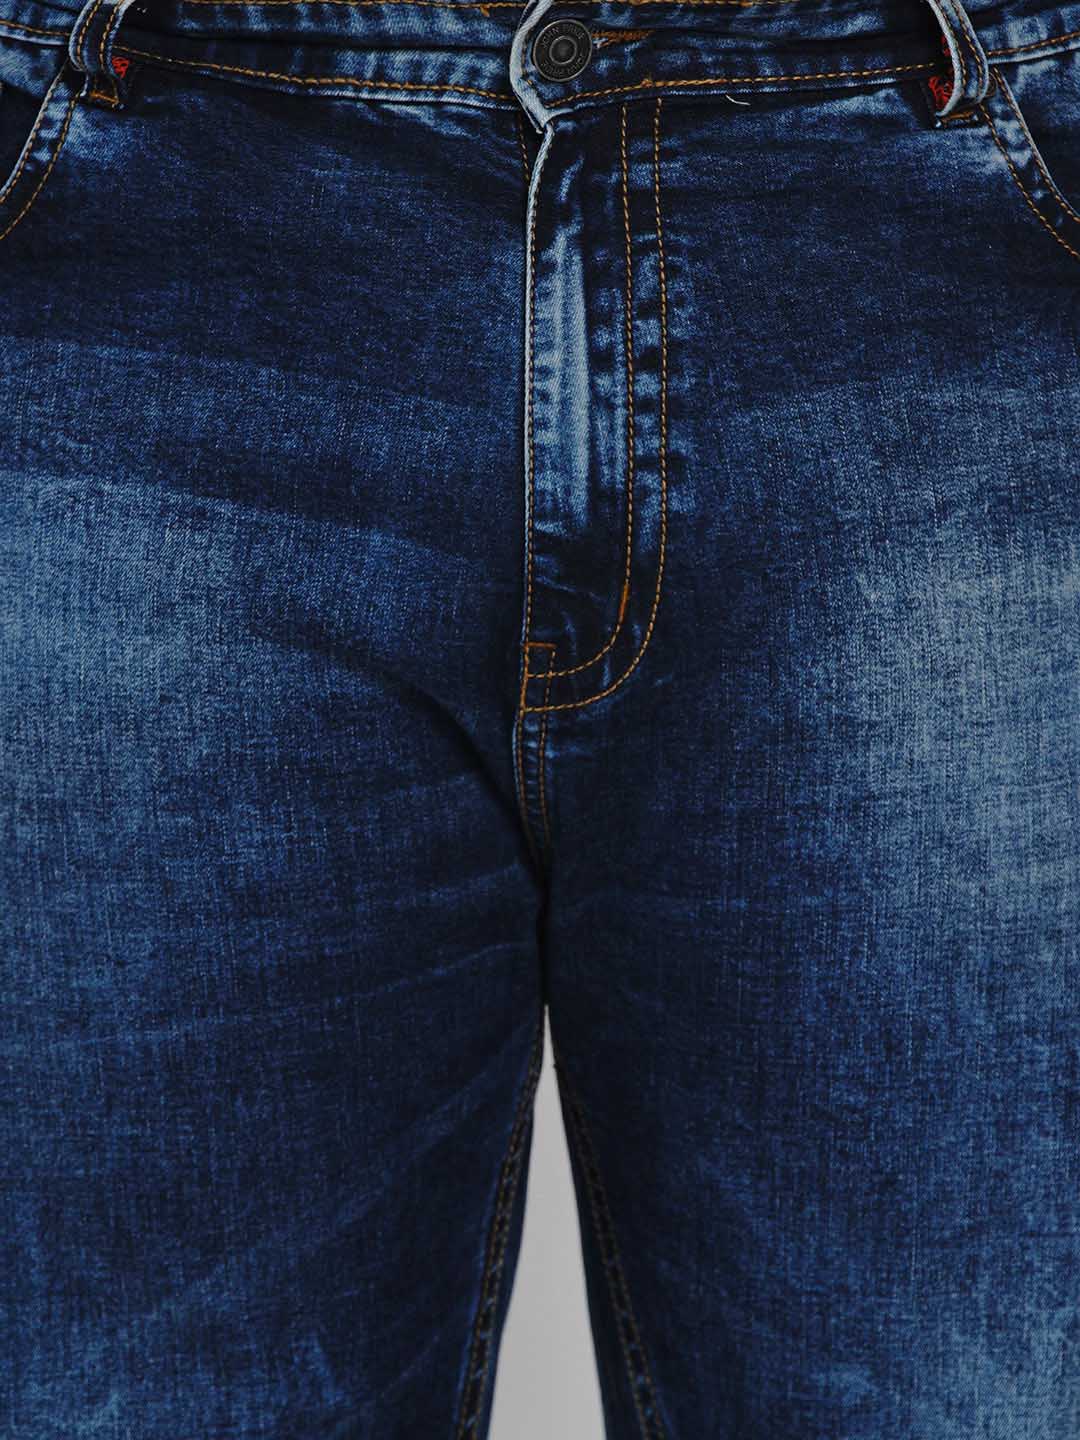 bottomwear/jeans/JPJ1284/jpj1284-3.jpg